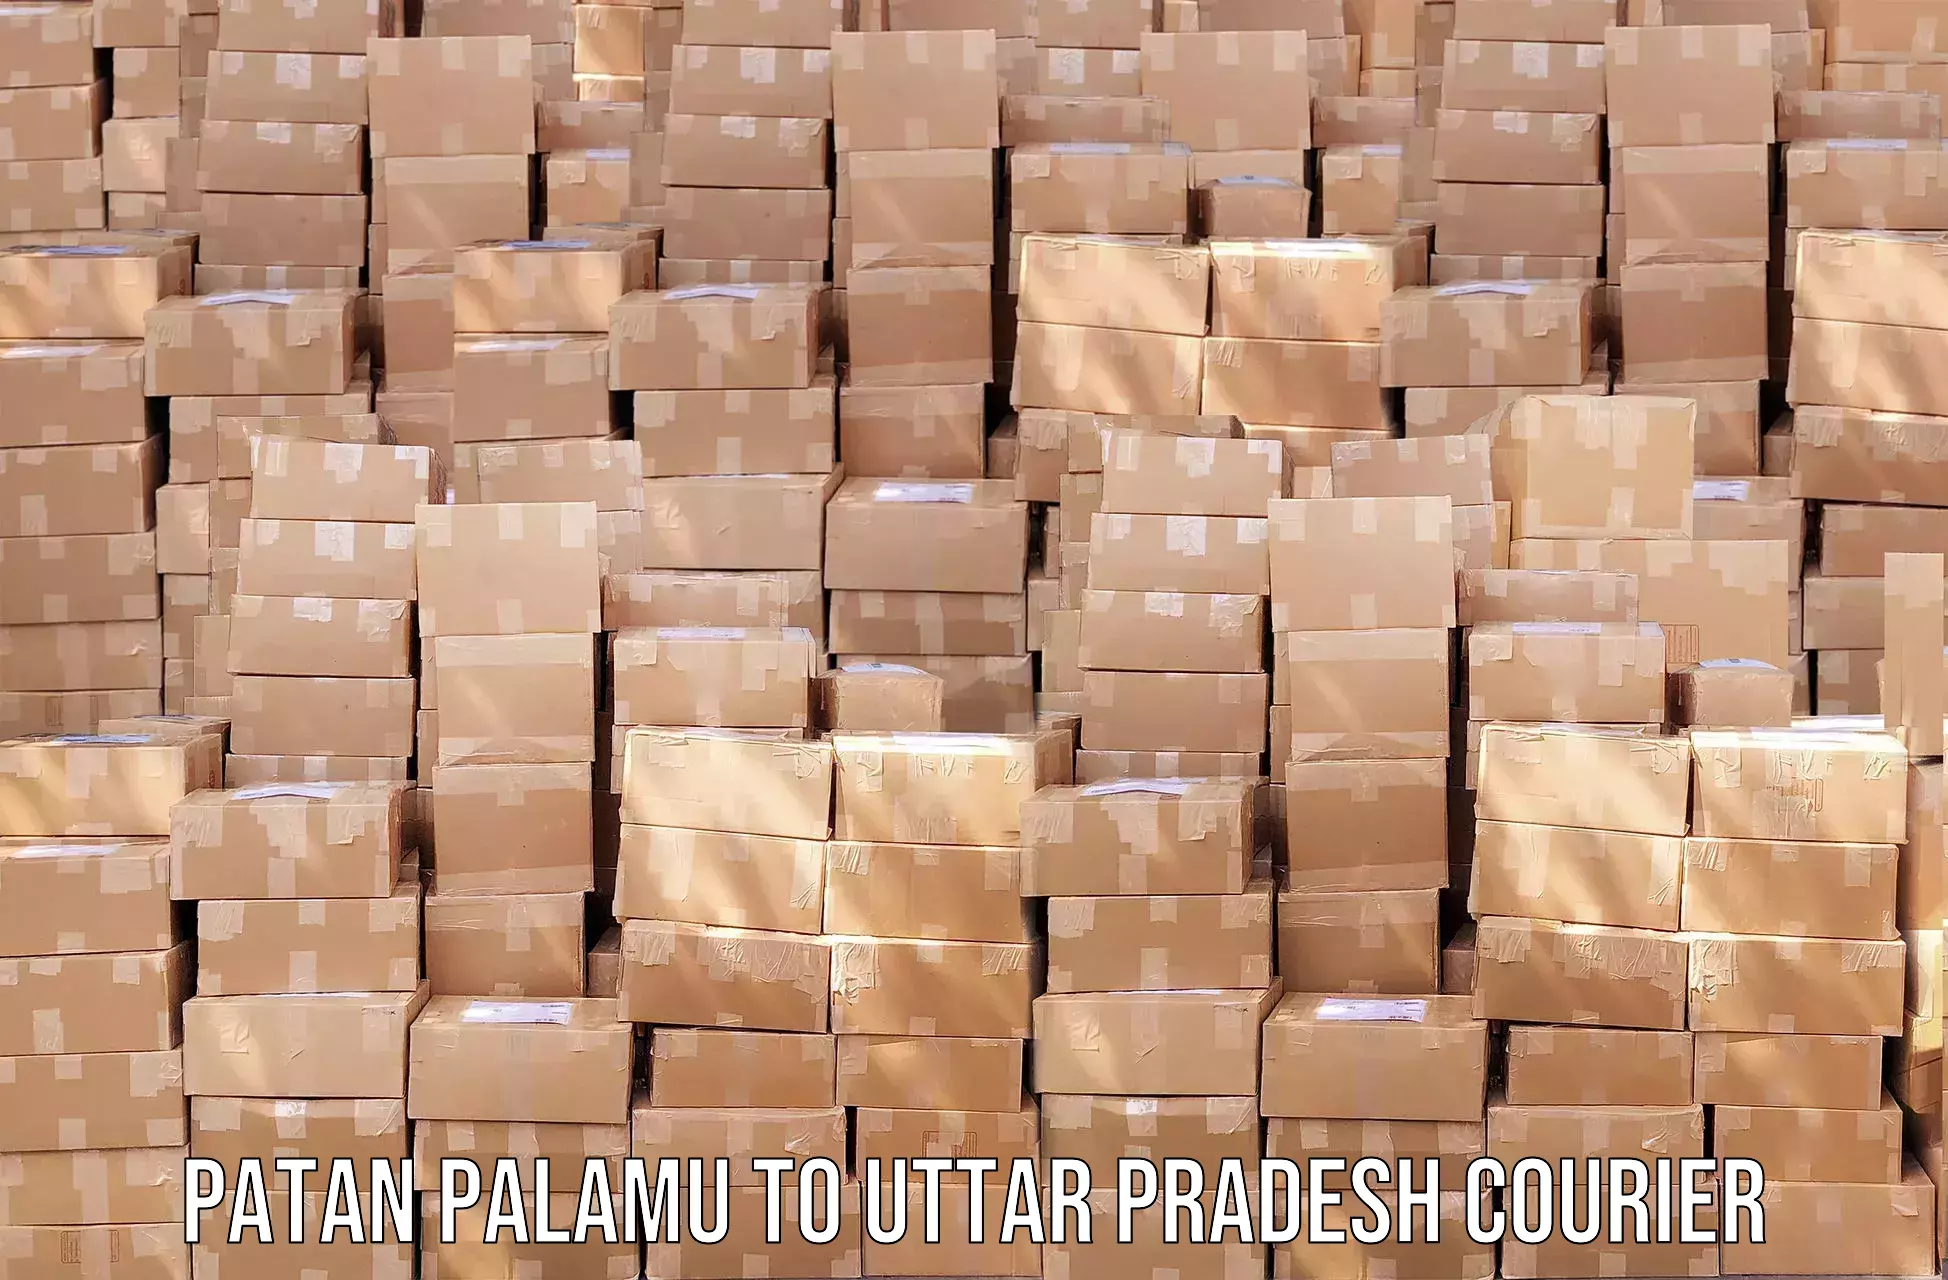 High-performance logistics in Patan Palamu to Bansi